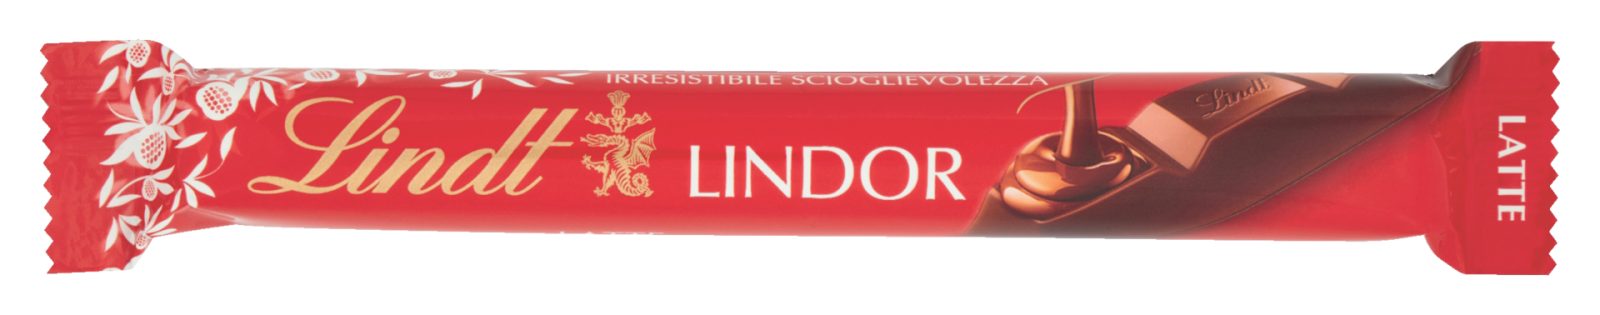 Snack Lindor Latte